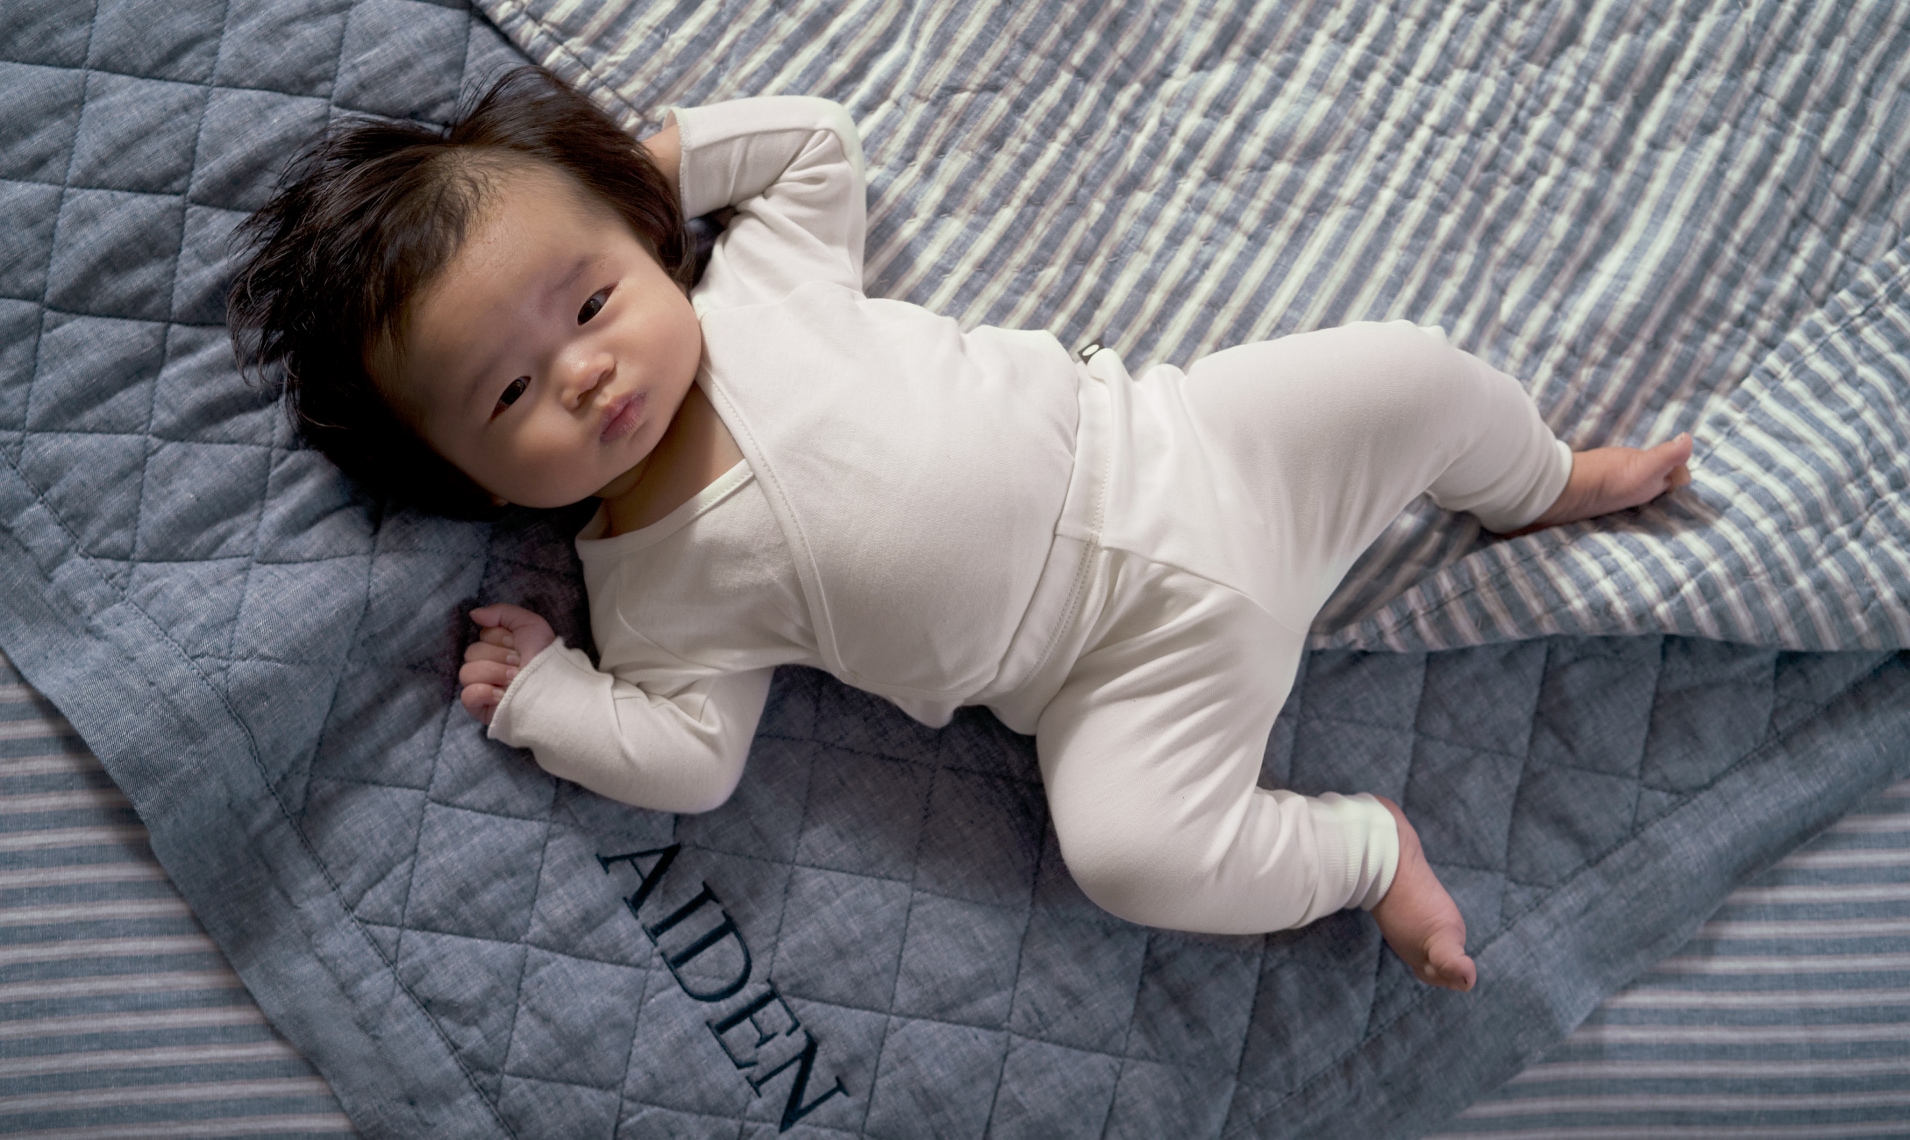 Belgian Linen Baby Bedding